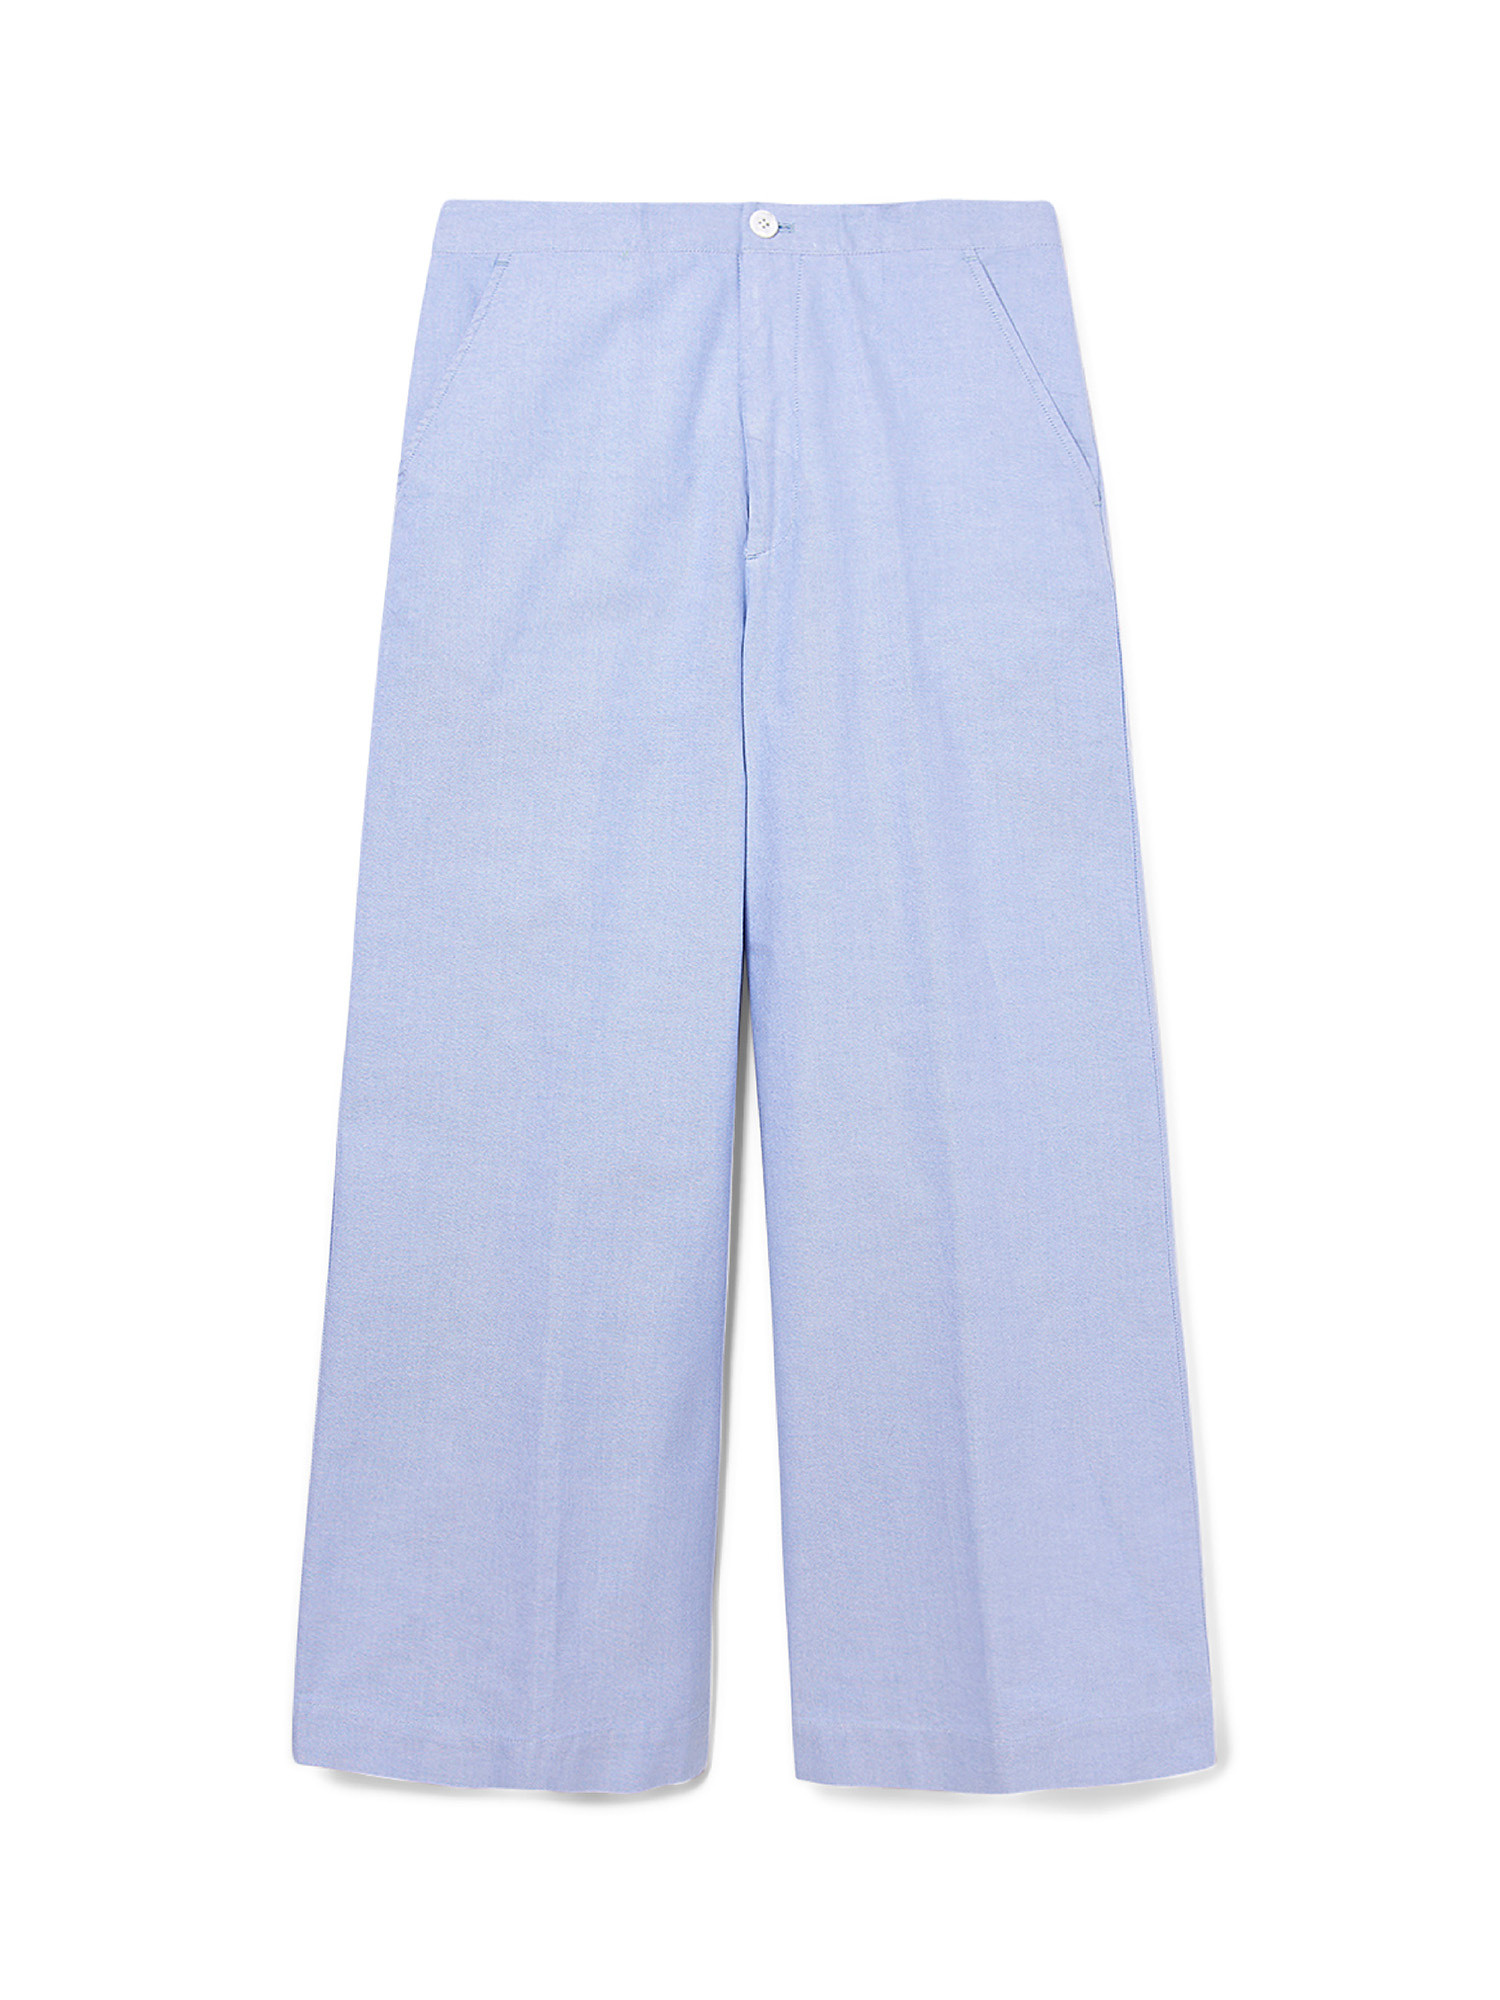 Pantalone, Azzurro, large image number 0